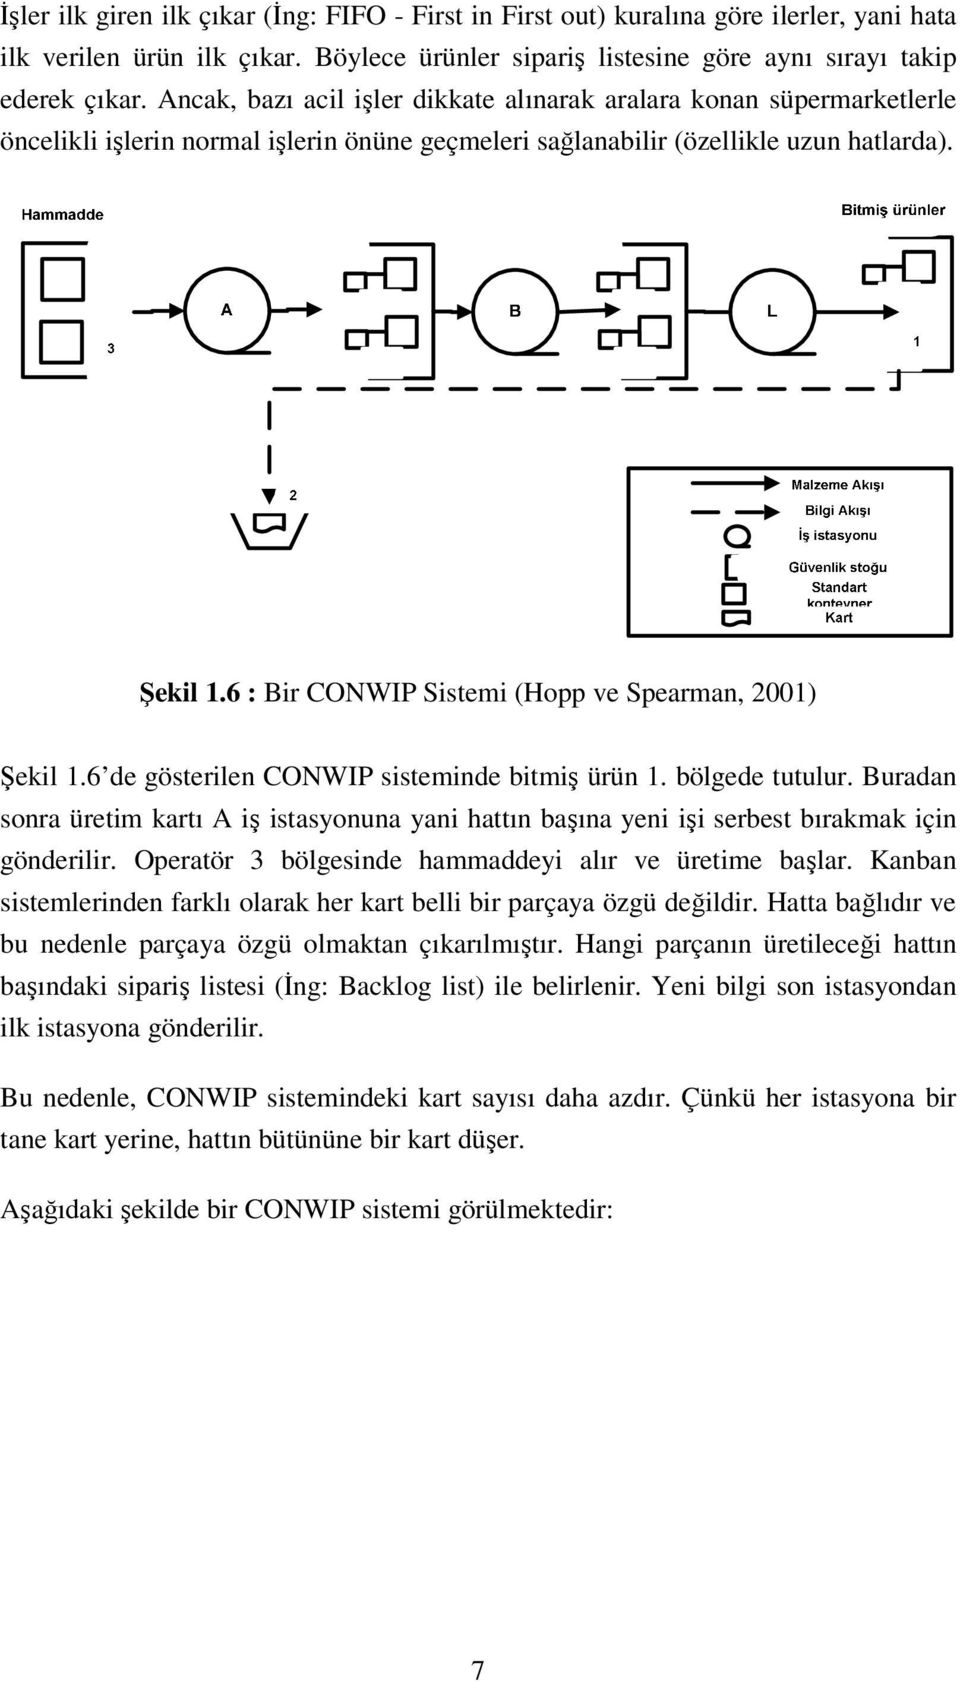 6 : Bir CONWIP Sistemi (Hopp ve Spearman, 2001) Şekil 1.6 de gösterilen CONWIP sisteminde bitmiş ürün 1. bölgede tutulur.